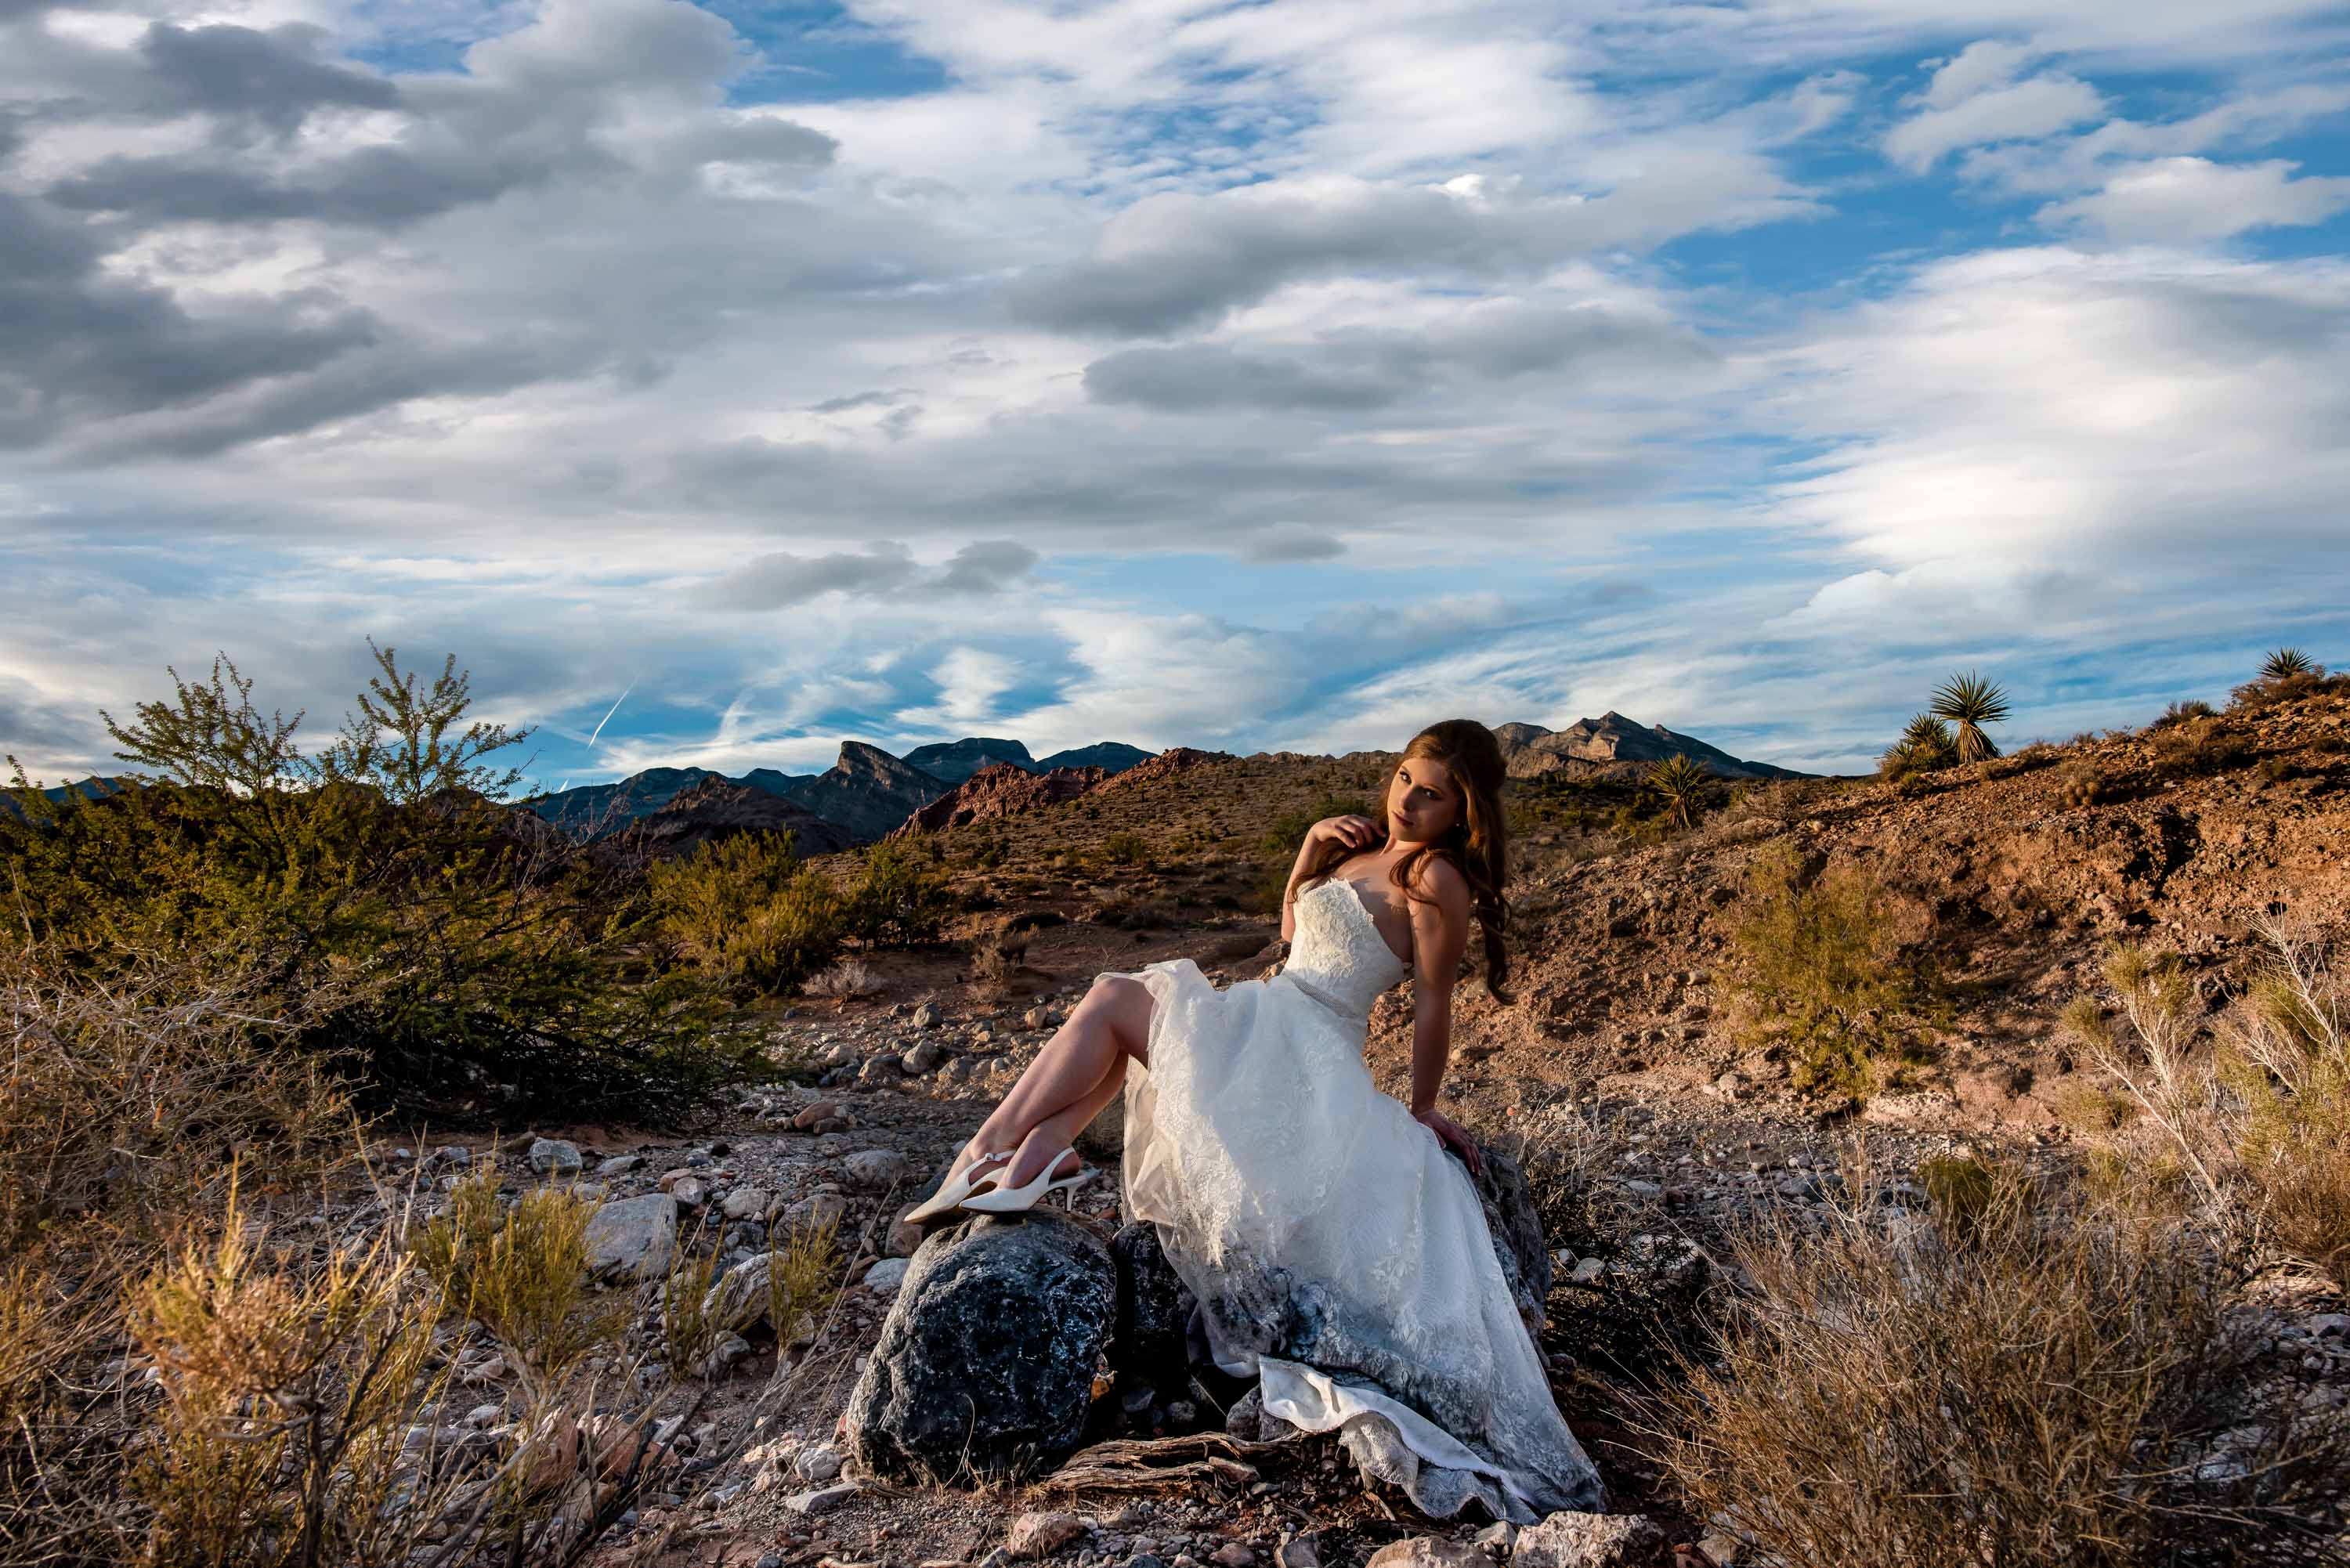 Desert elopement photos | Las Vegas elopement photographer